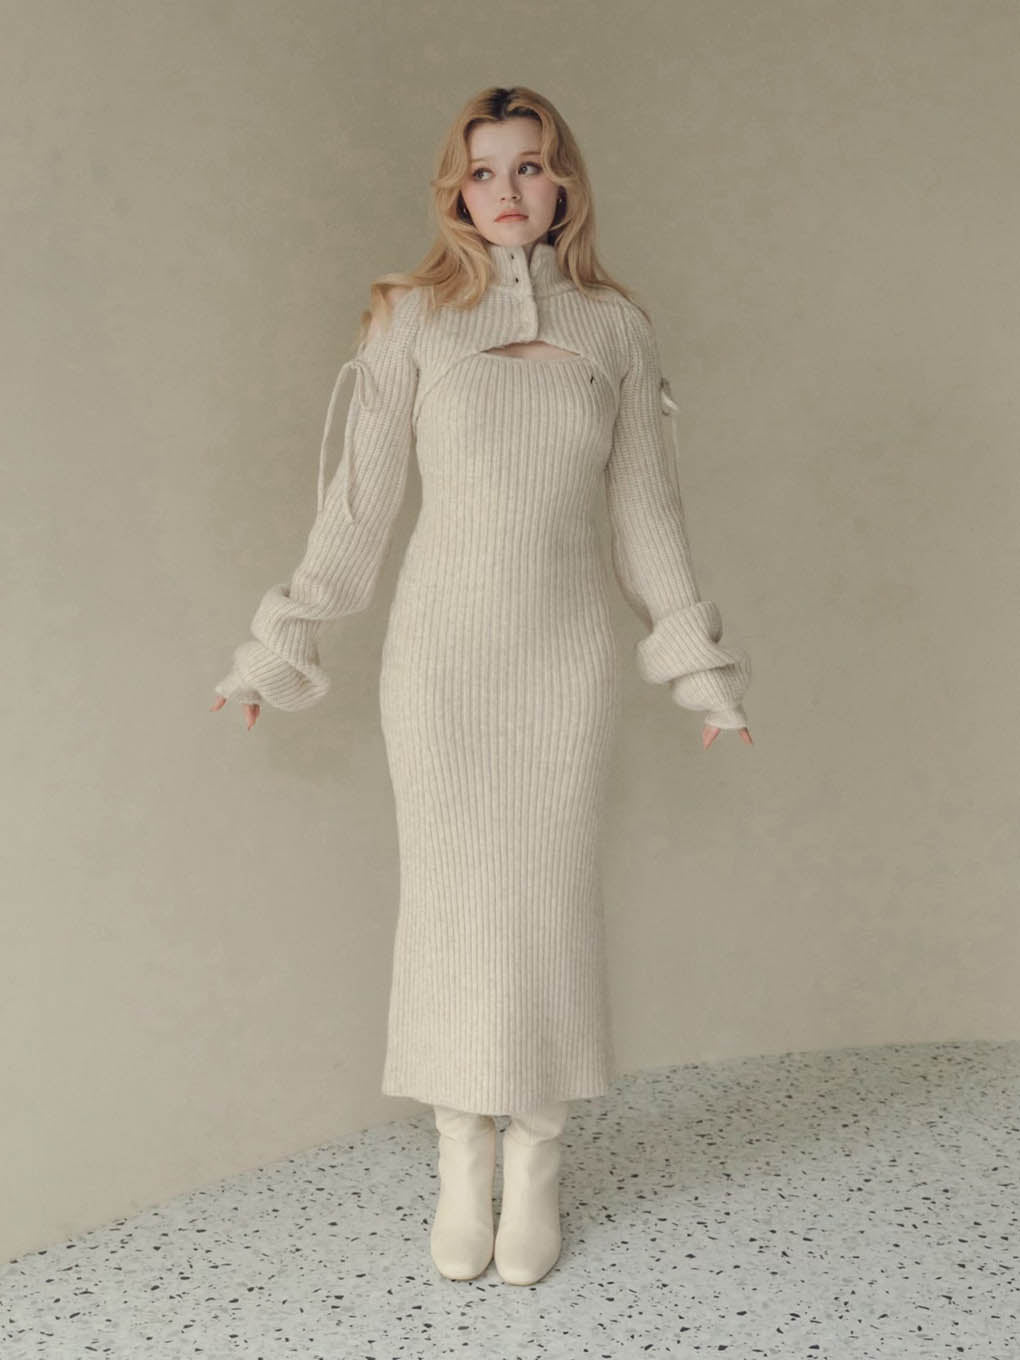 ANDMARY Rothy knit set dressそれまでに配送は可能でしょうか